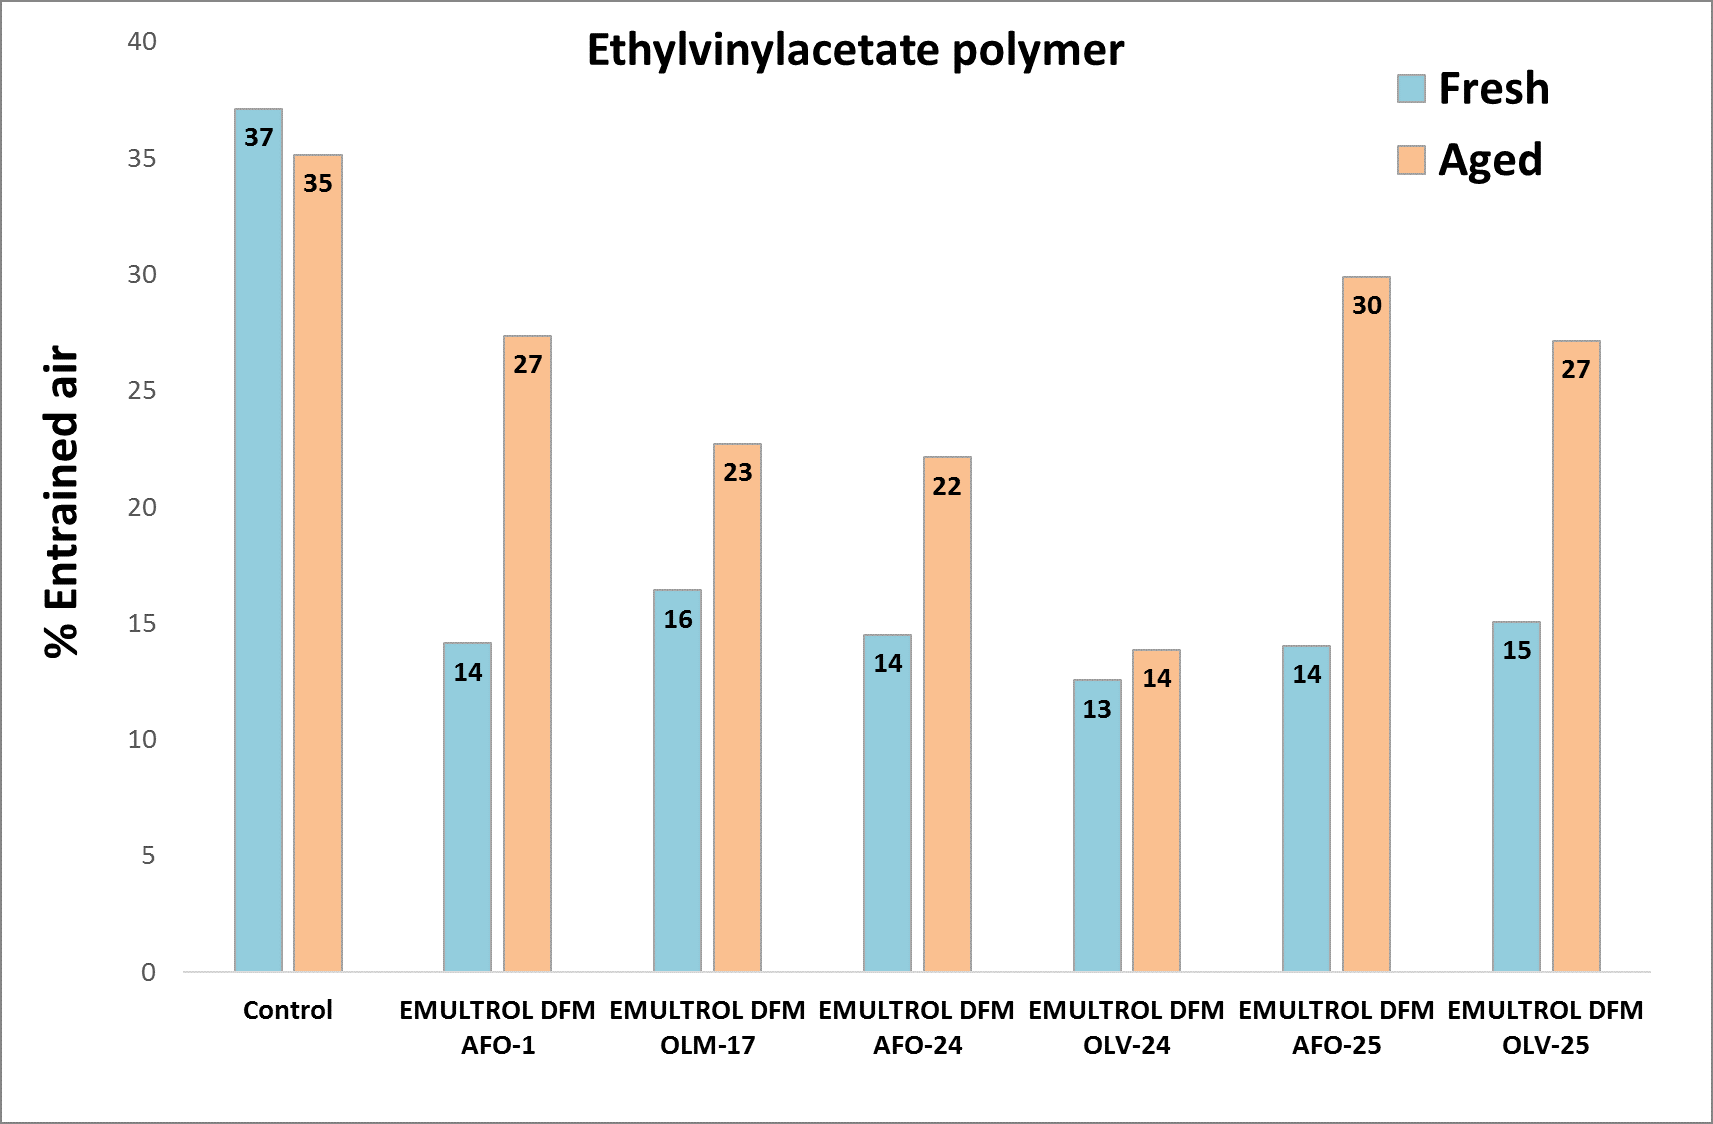 本文介绍了涂料行业4种标准水基聚合物分散体的抑泡效果试验结果，分别是新鲜试验(蓝色)和老化后试验(橙色)的效果。